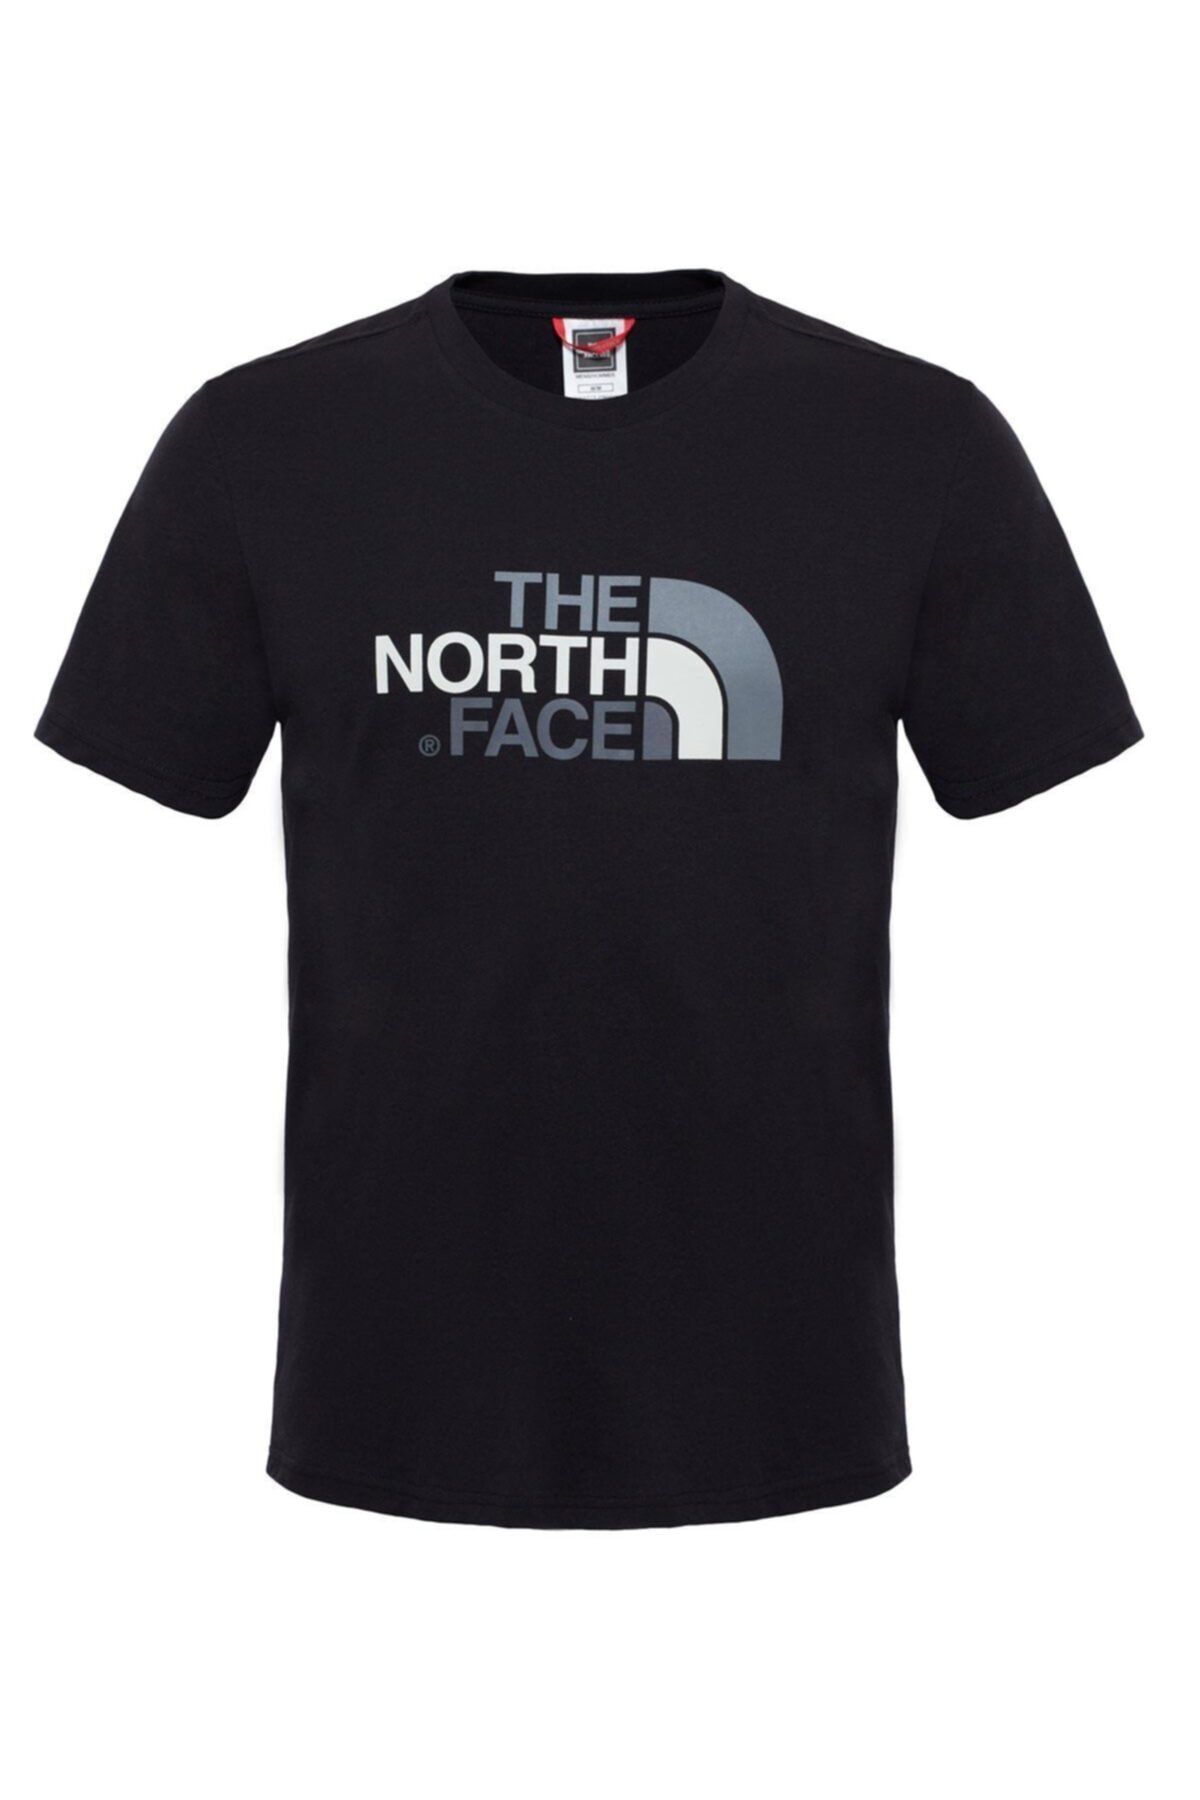 تی شرت مردانه یقه گرد مشکی نورث فیس North Face (برند آمریکا)